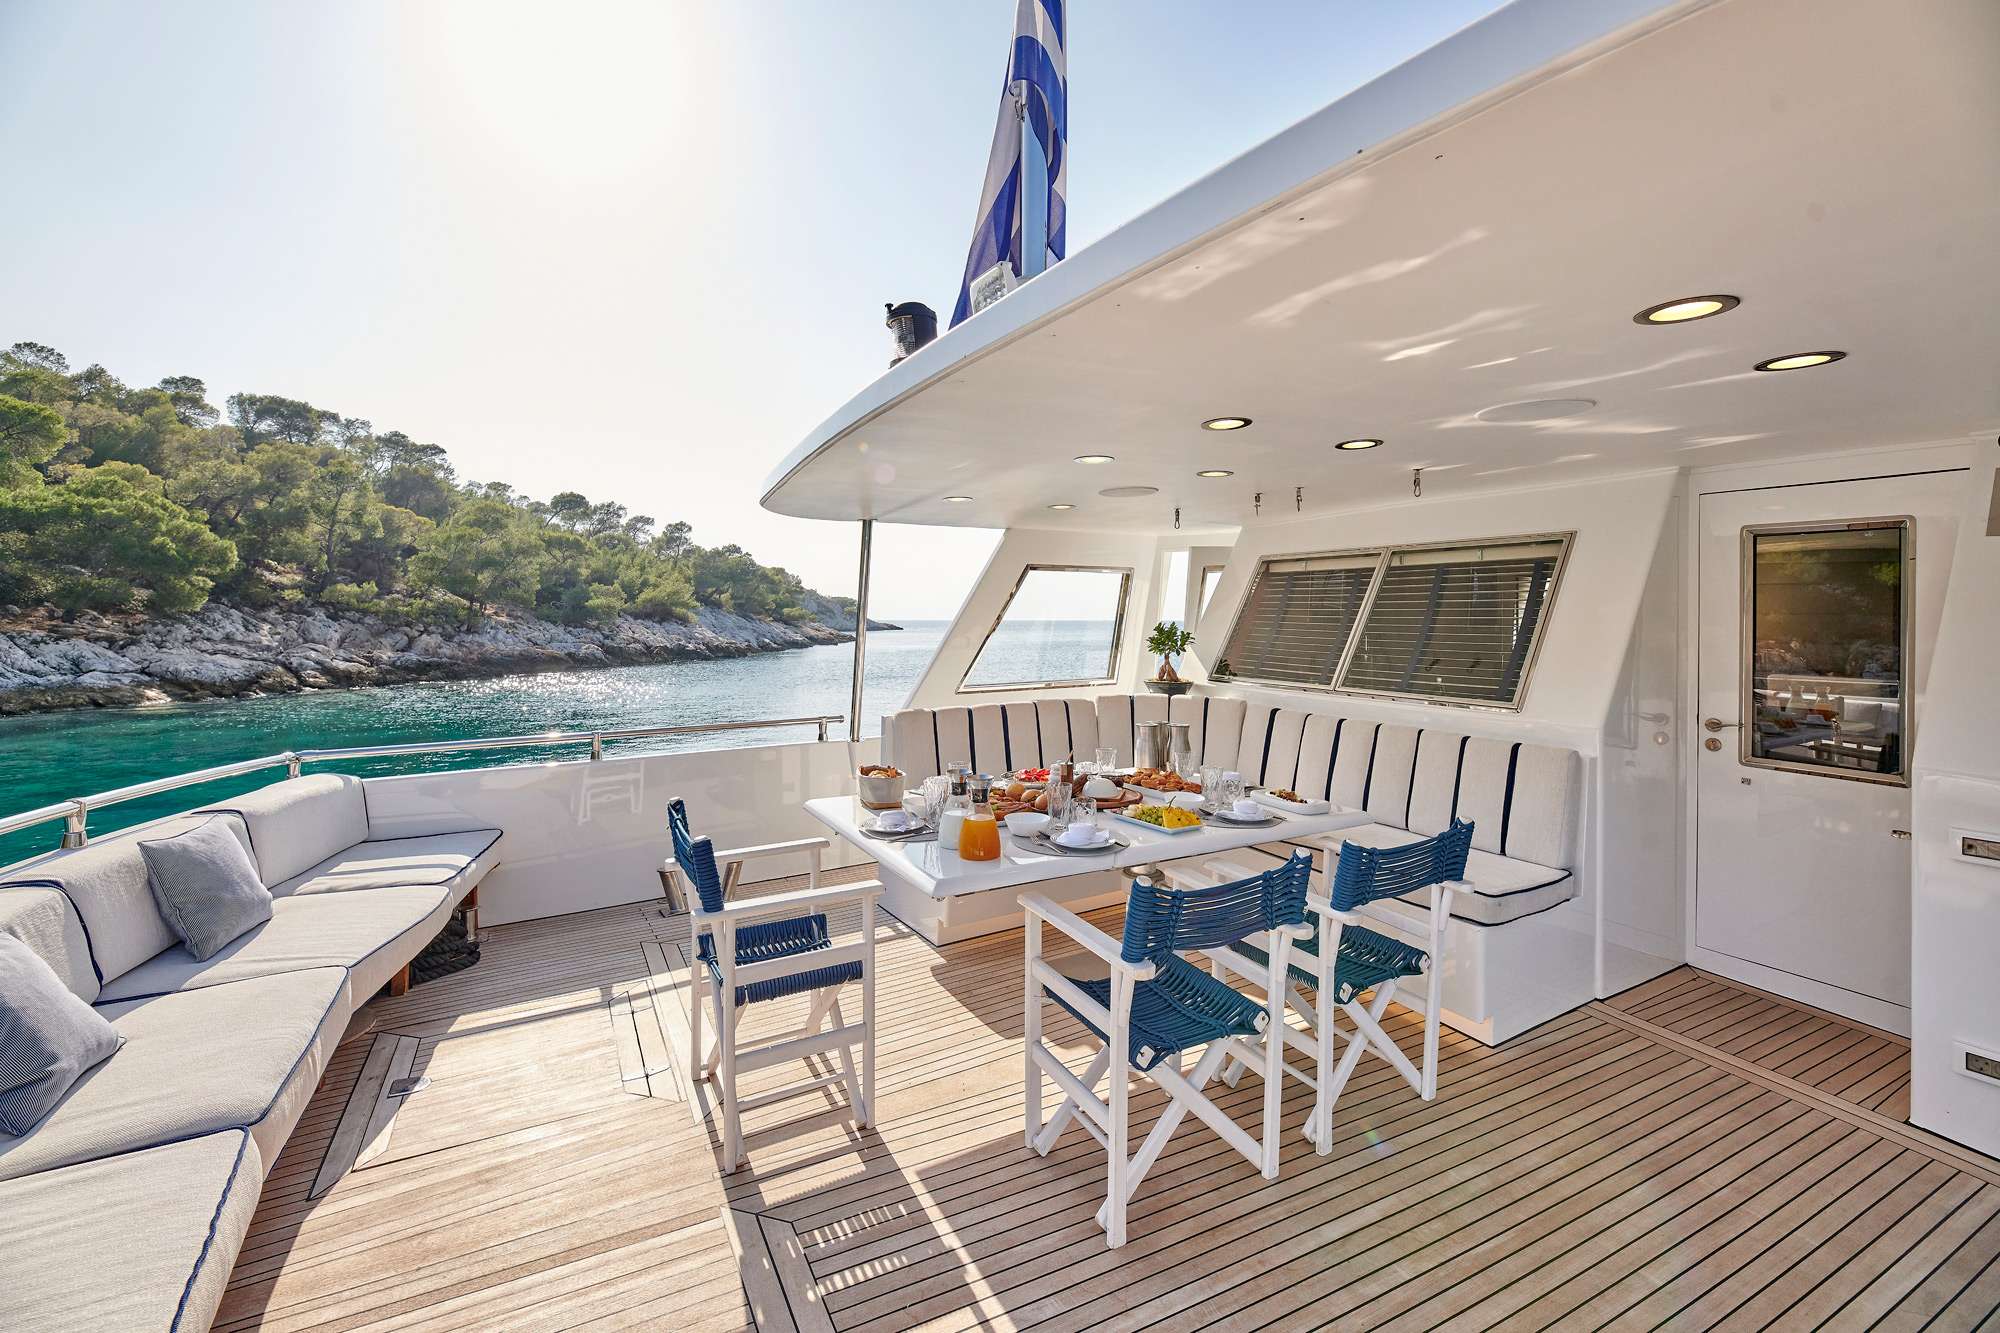 ALAYA - Yacht Charter Zakynthos & Boat hire in Greece 4